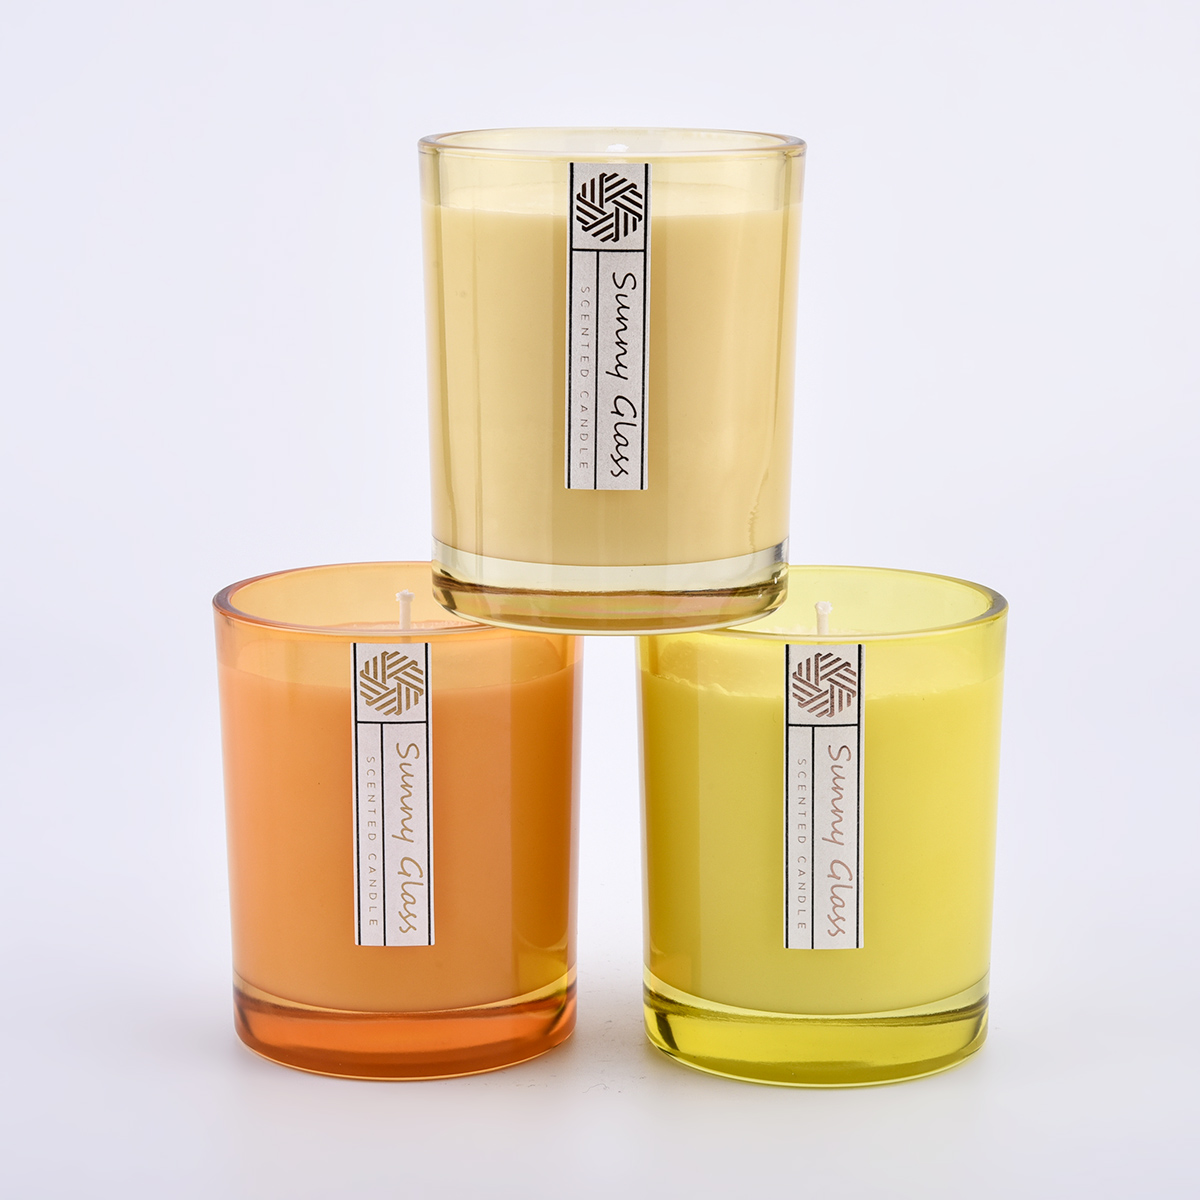 Brugerdefineret farve og logo 300ml 8oz voksglas Candle Jars Engros